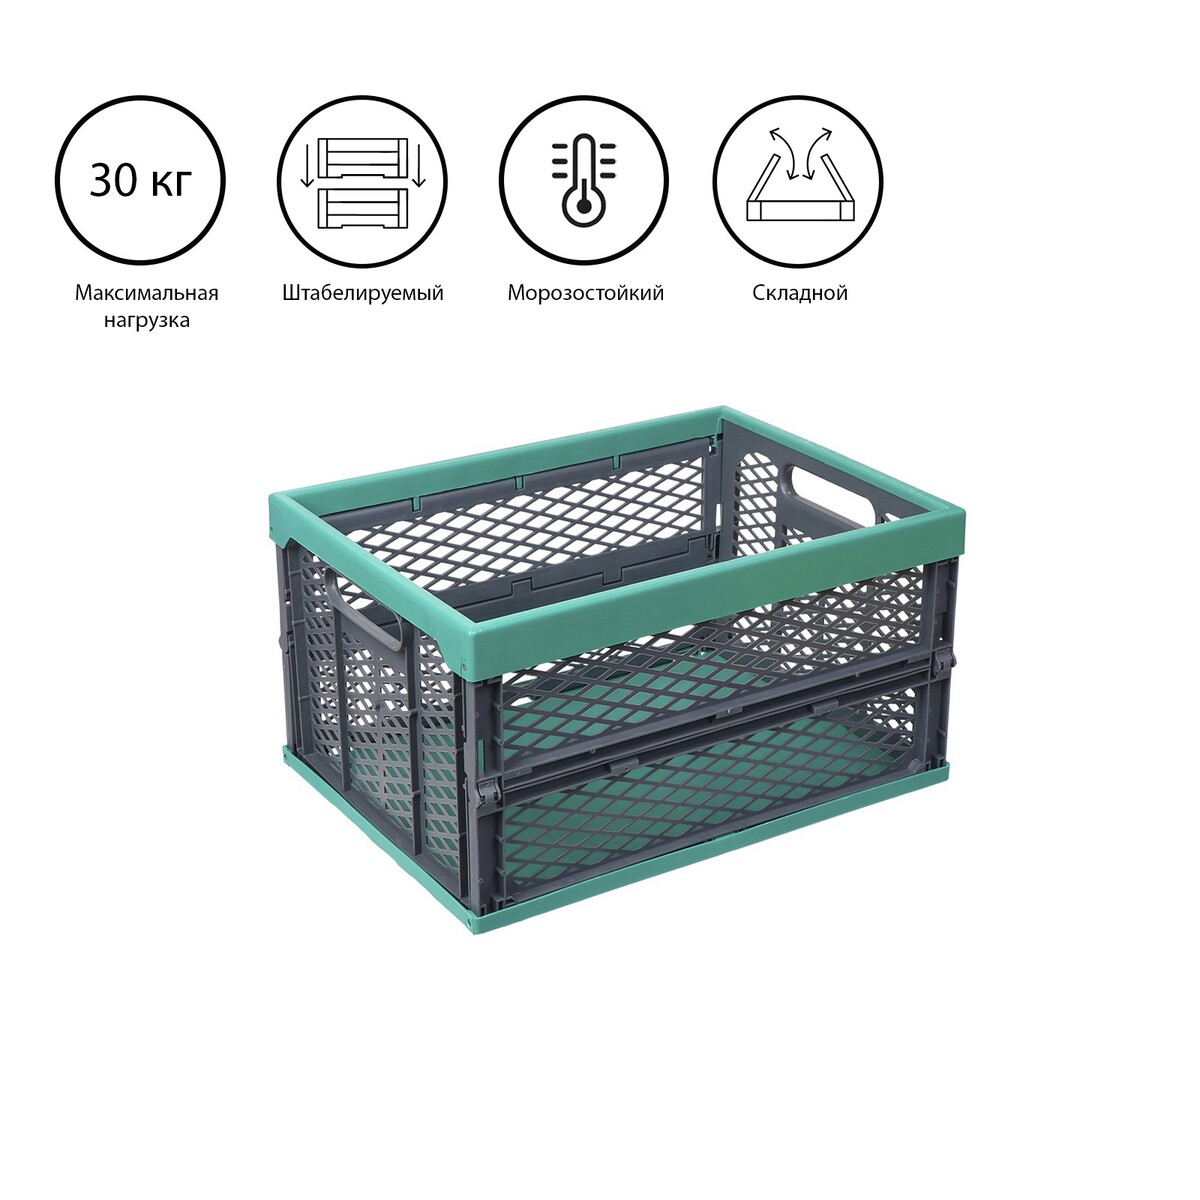 Ящик складной, пластиковый, 47,5 × 34,5 × 23 см, на 30 кг, зелено-серый